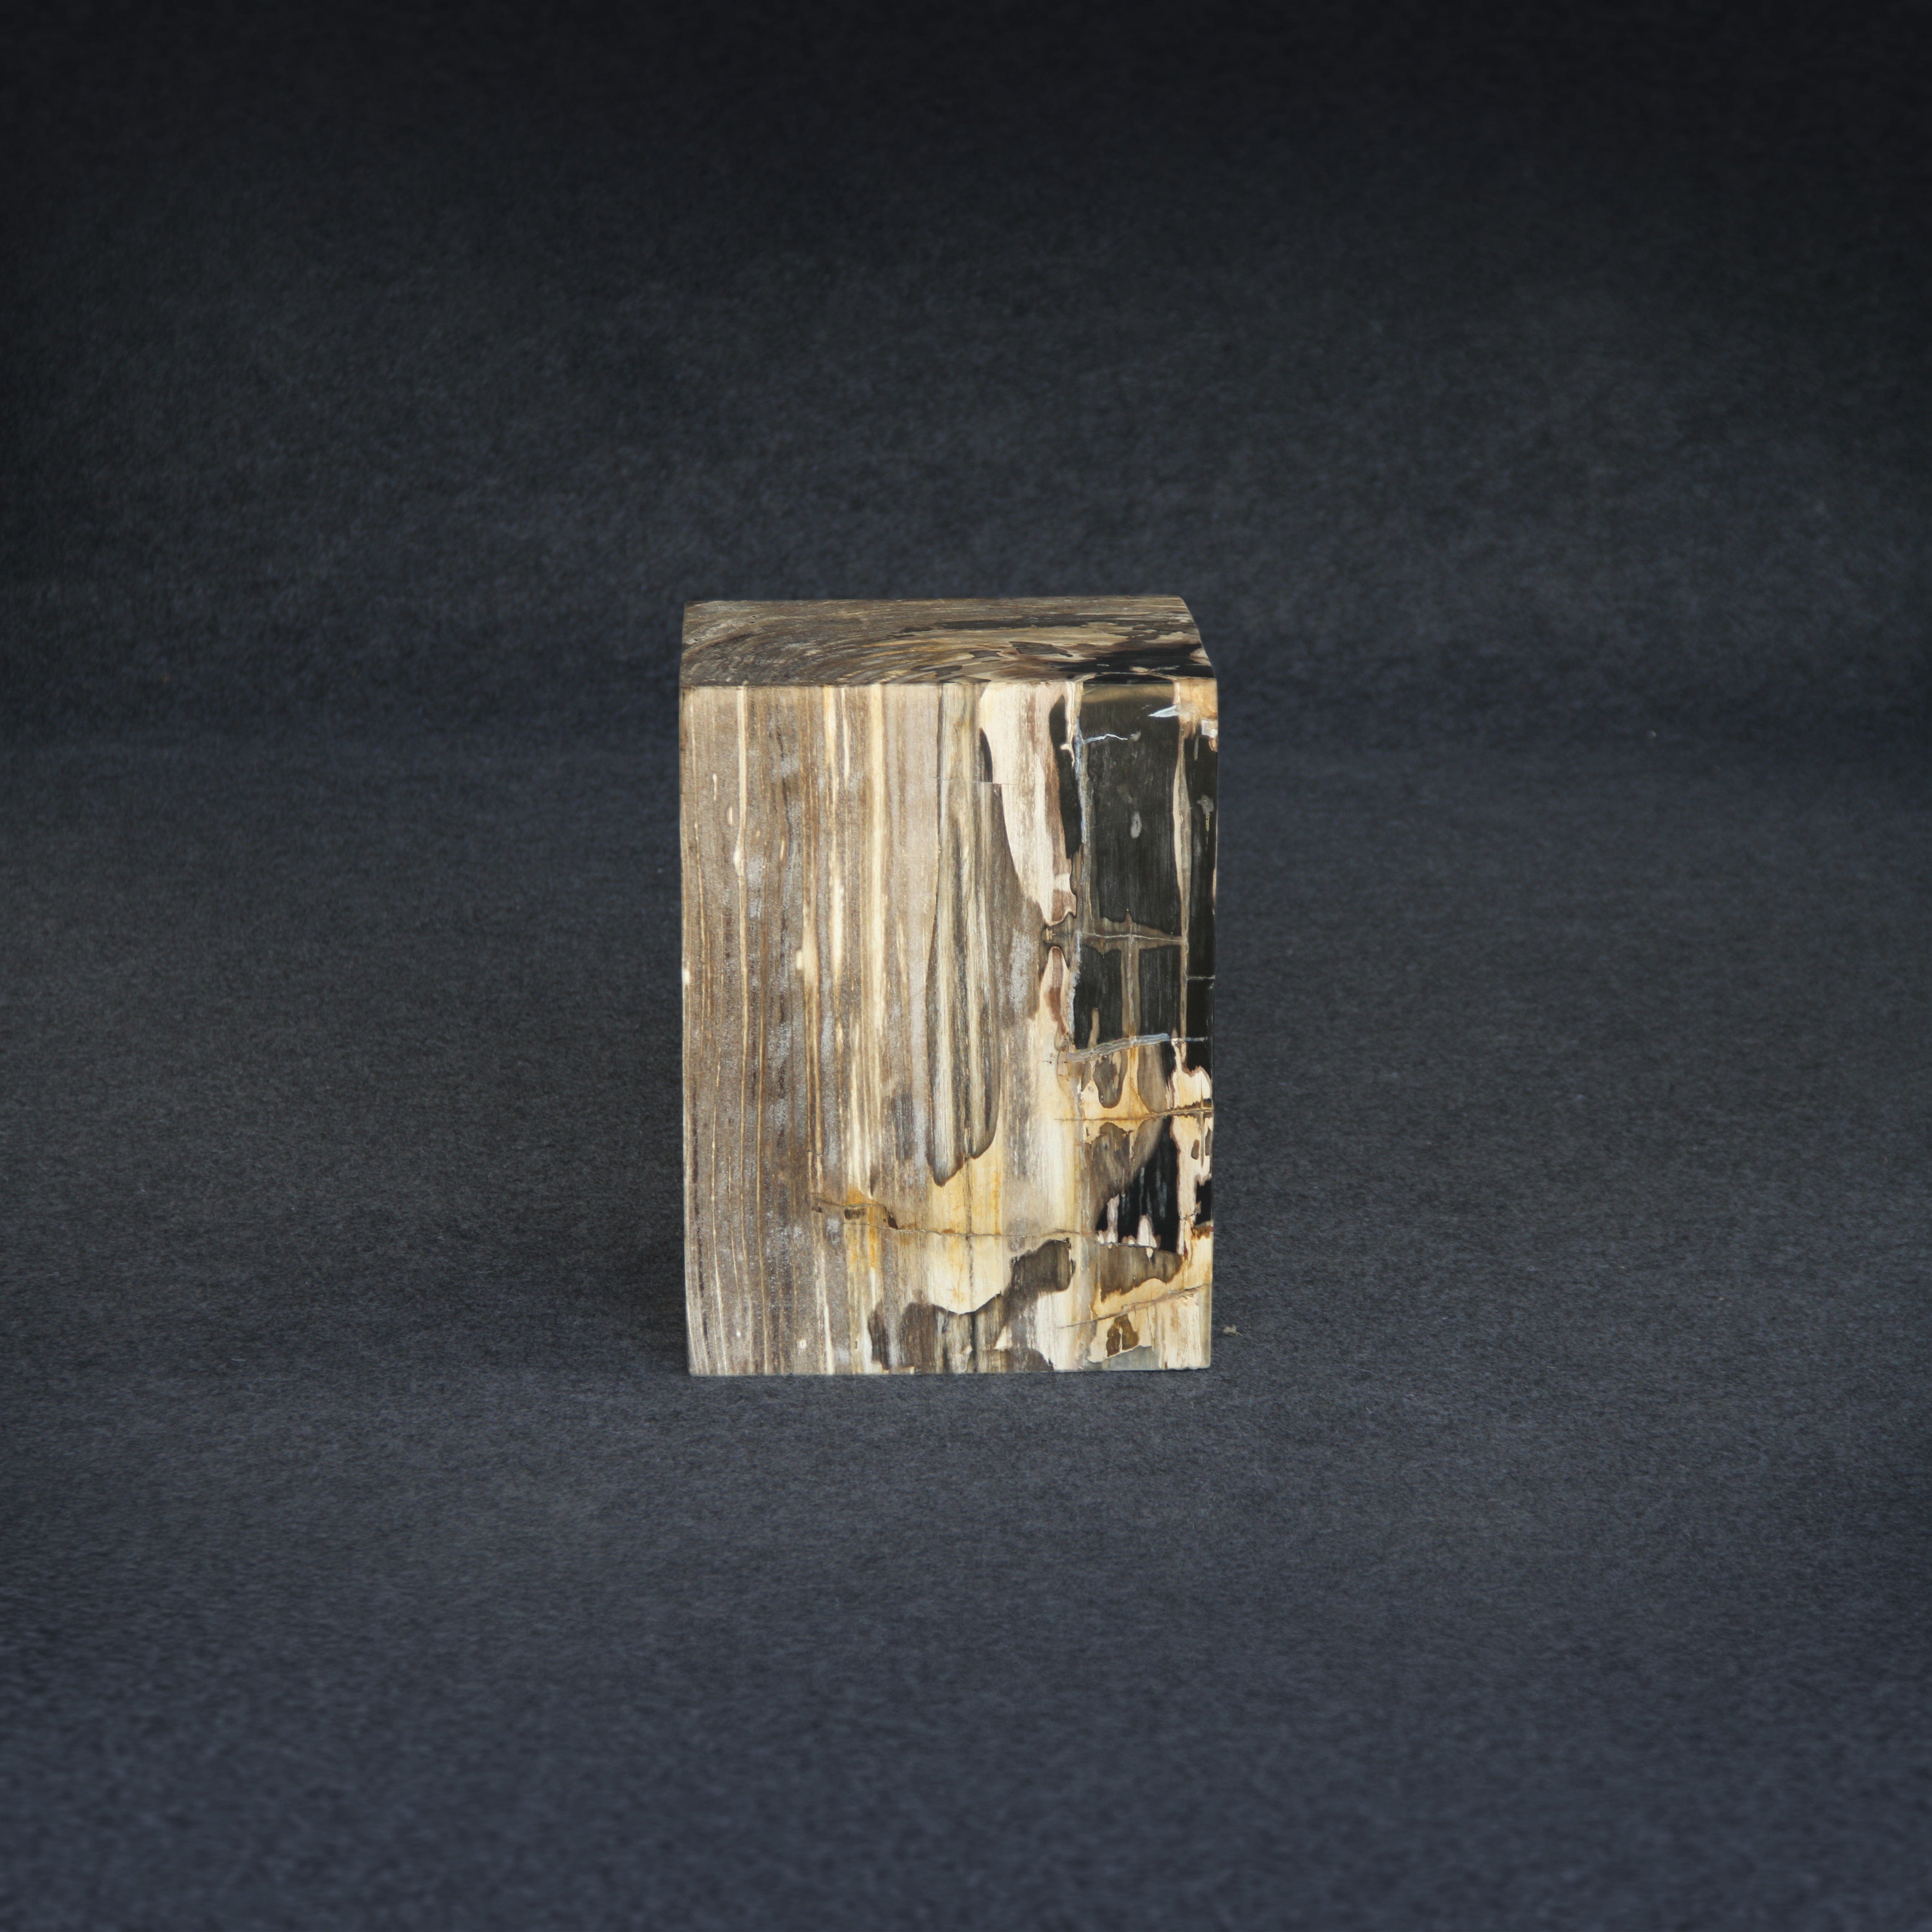 Kalifano Petrified Wood Petrified Wood Square Stump / Stool 16" / 198 lbs PWSS6200.002